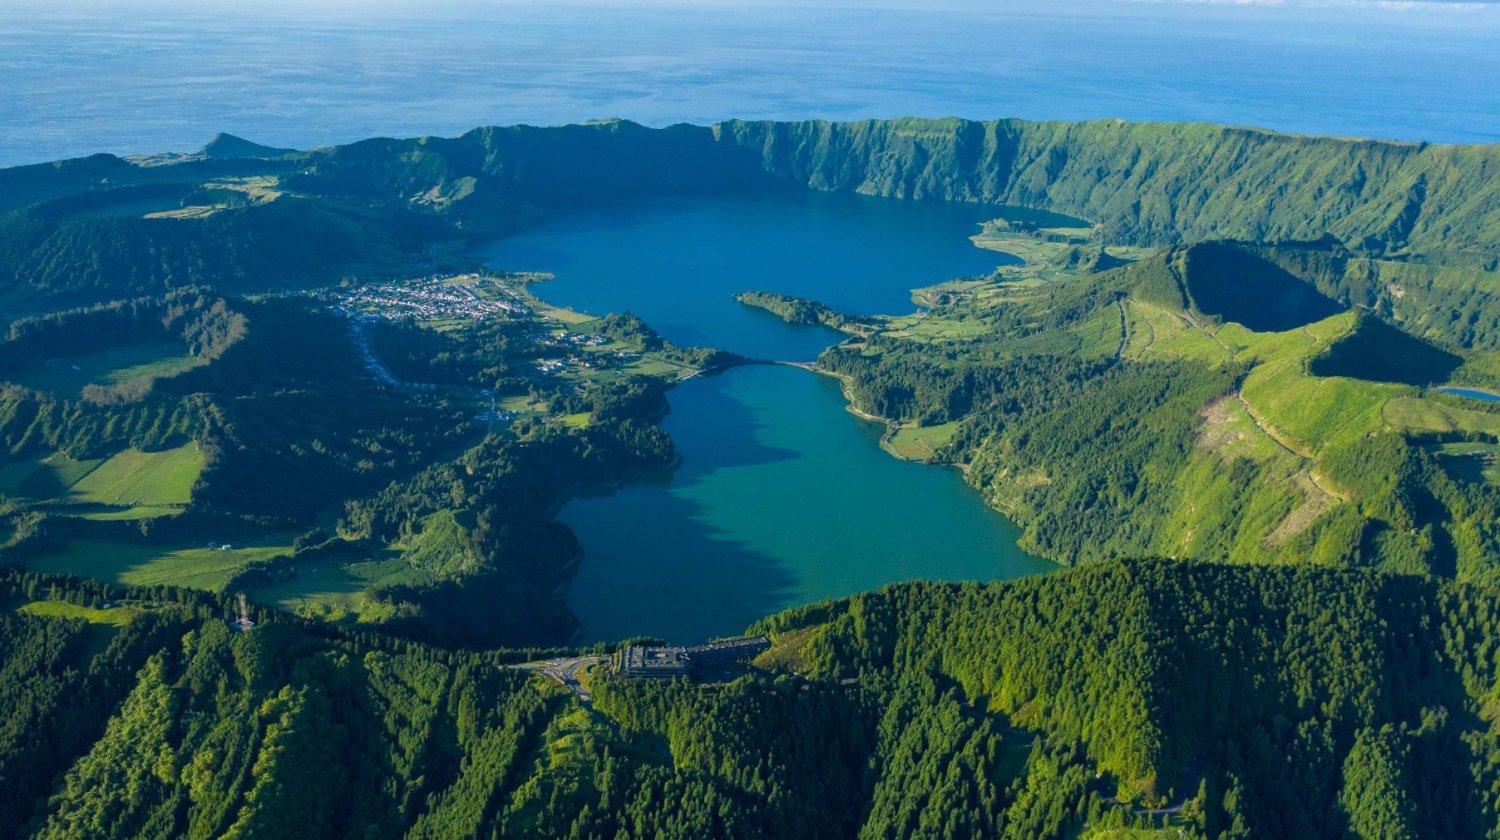 Lagoa das Sete Cidades, São Miguel, Azores